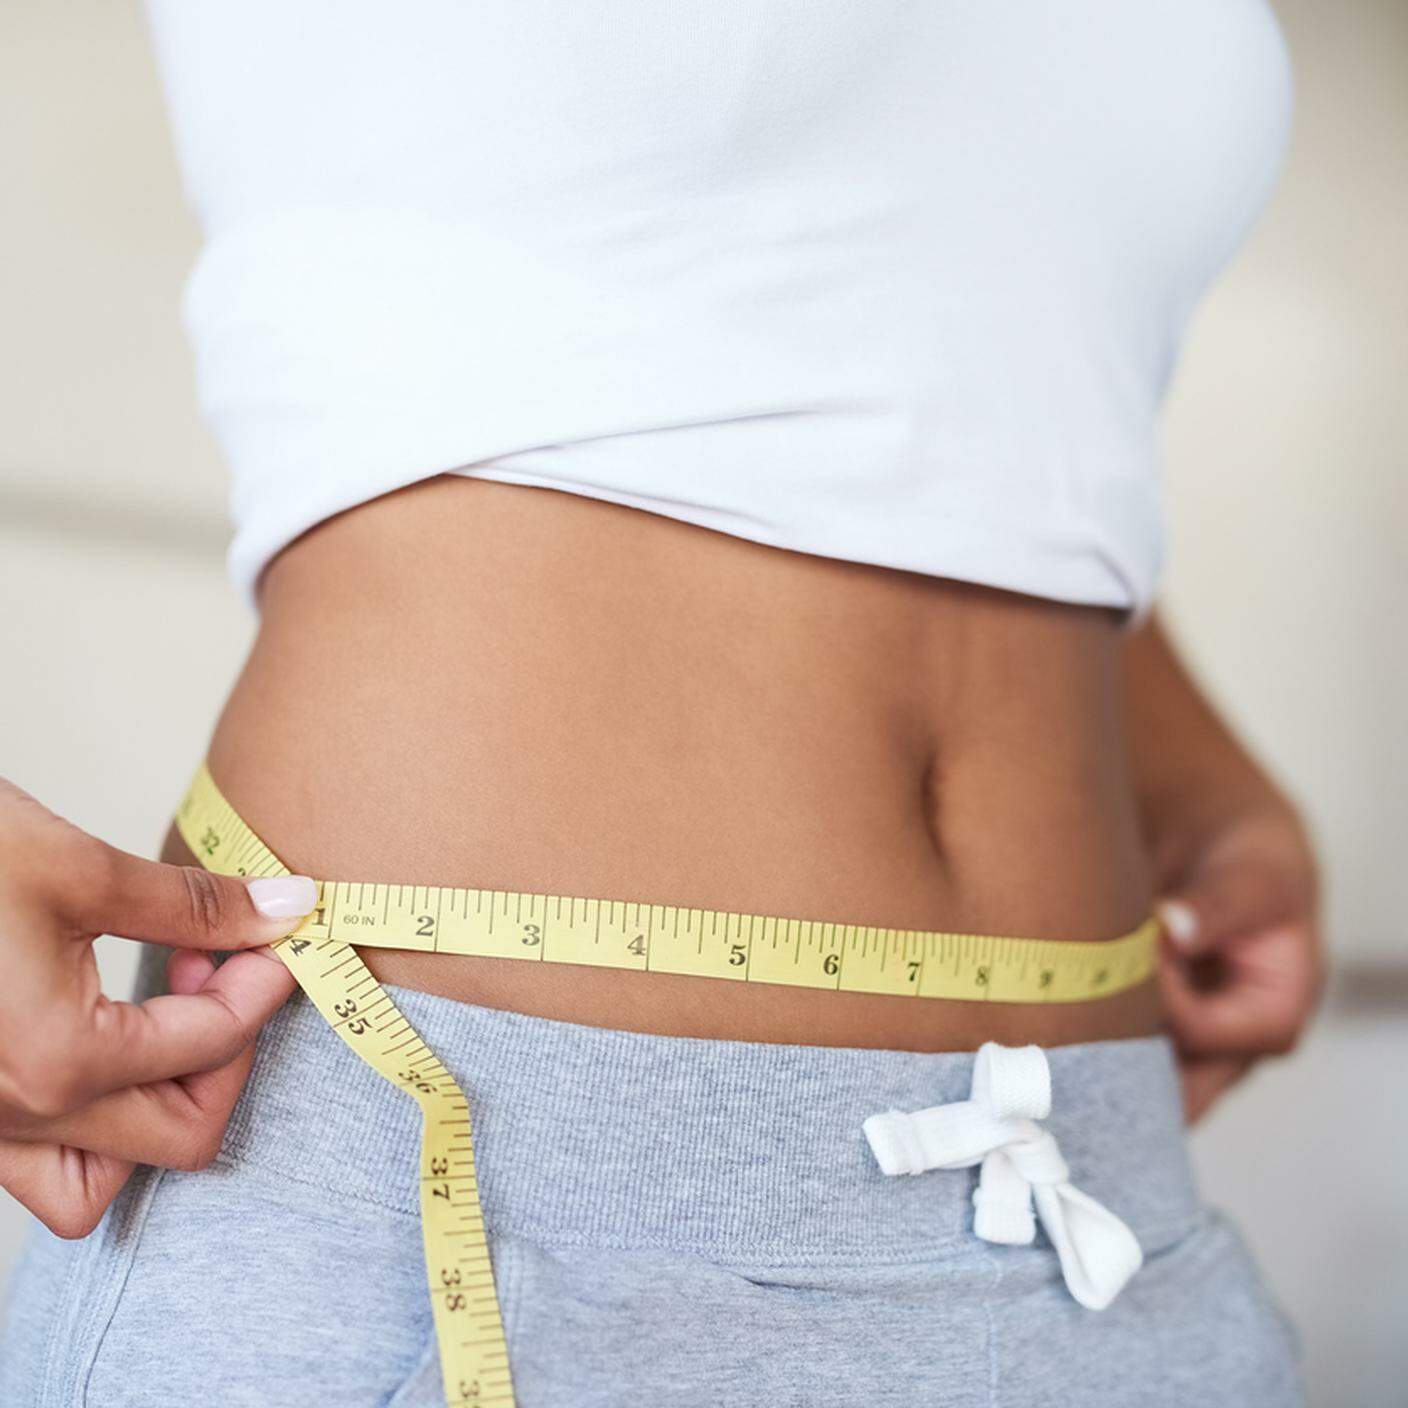 Dieta e perdita di peso